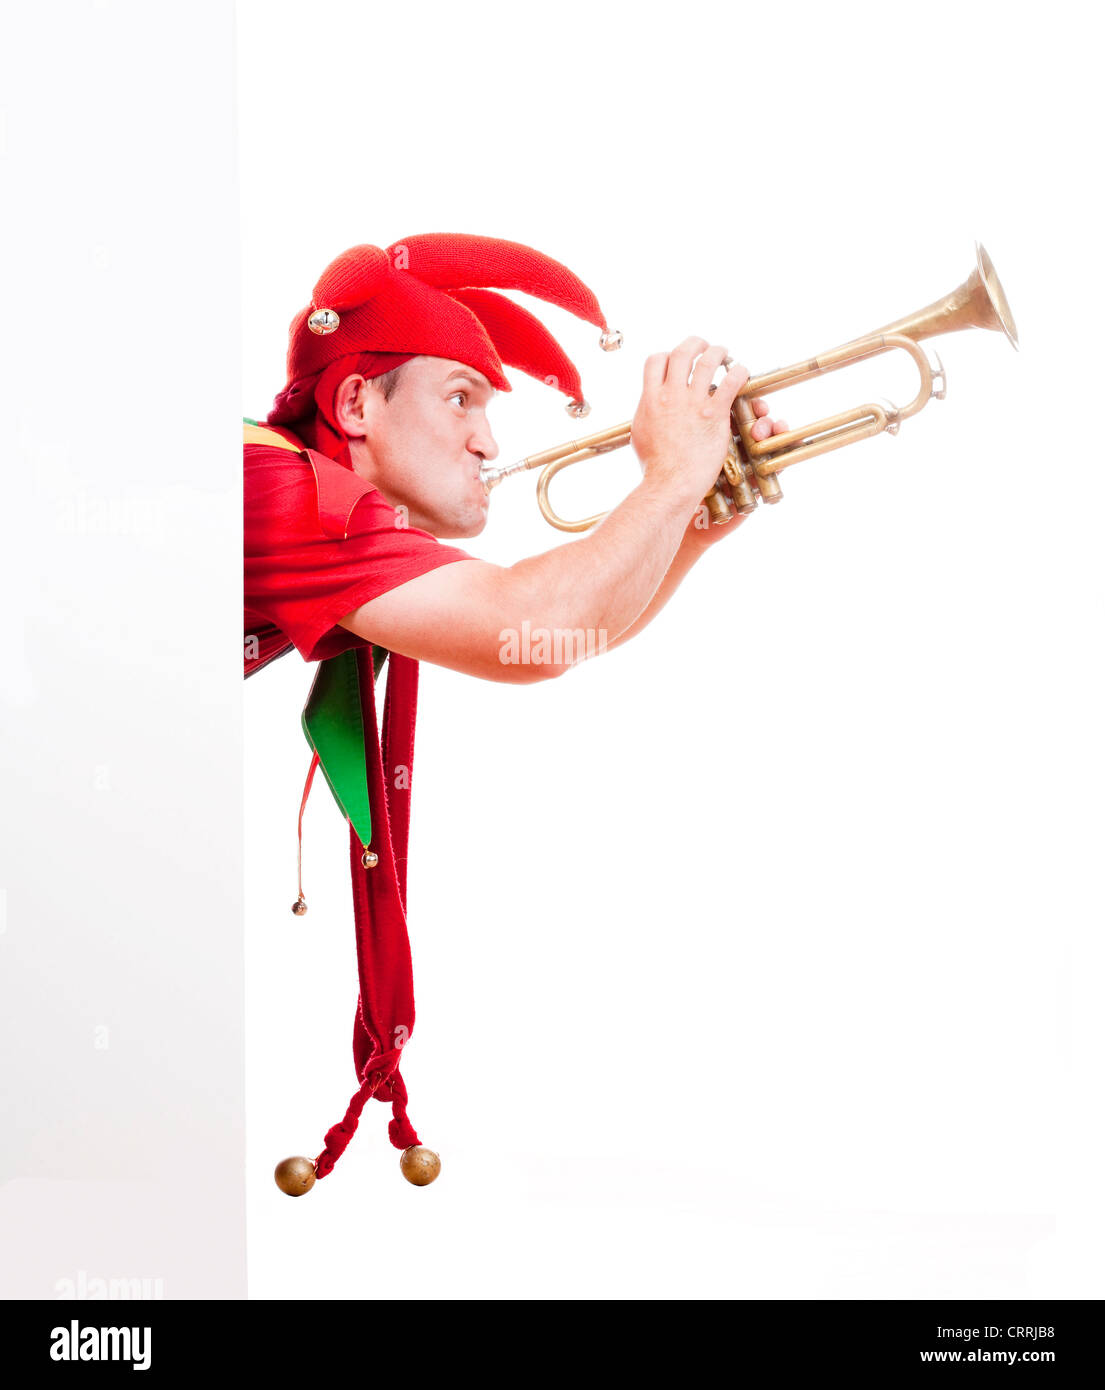 Jester - Intrattenimento figura in costume tipico tromba di soffiatura Foto Stock